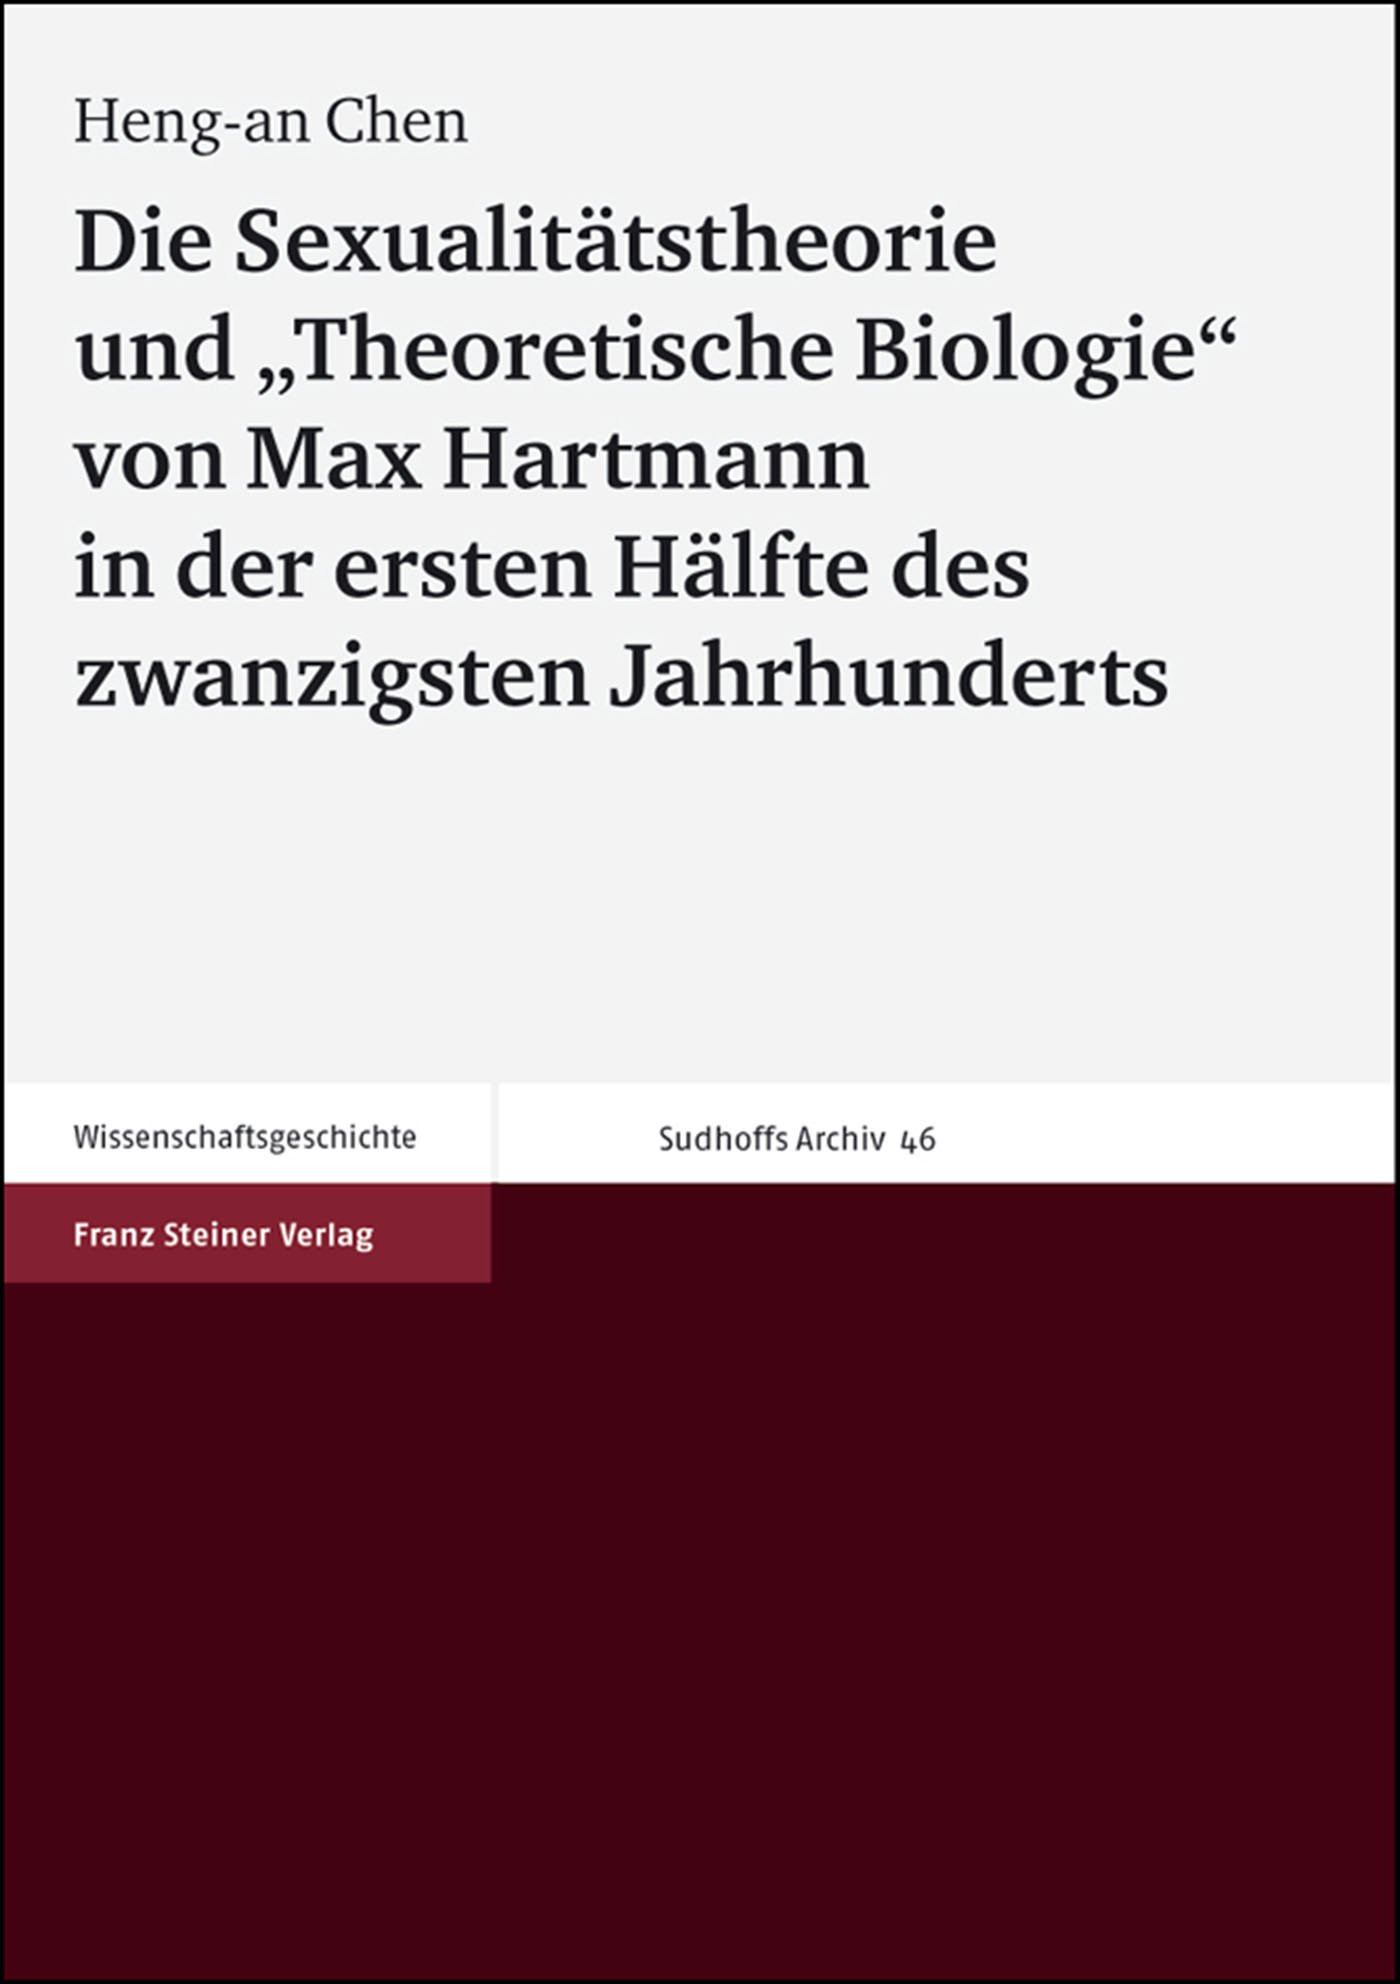 Die Sexualitätstheorie und "Theoretische Biologie" von Max Hartmann in der ersten Hälfte des zwanzigsten Jahrhunderts